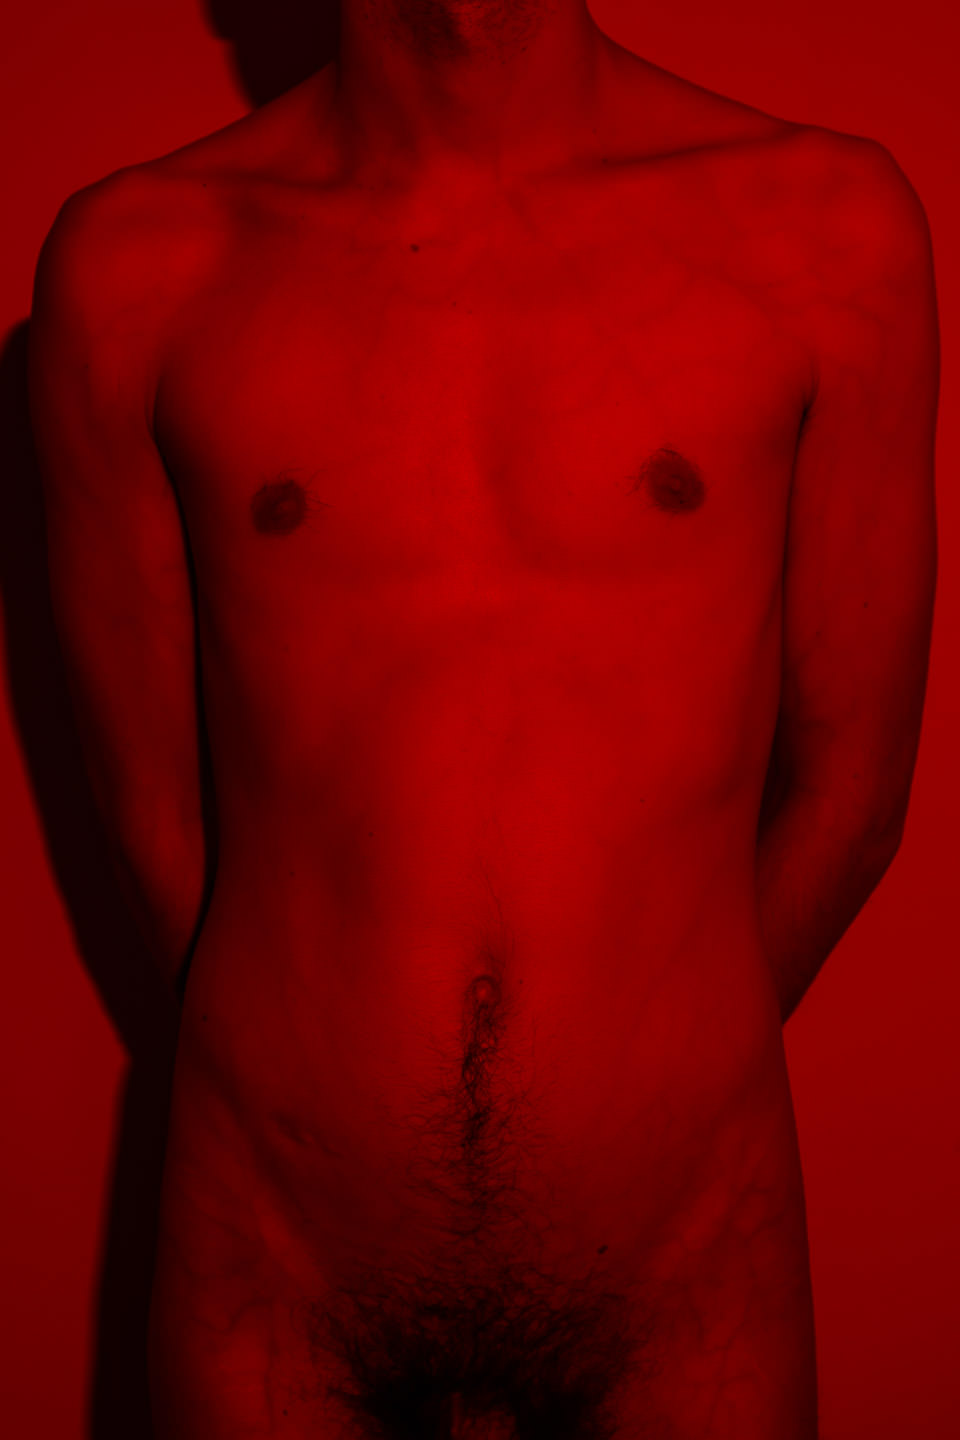 Ein Körper im Rotlicht